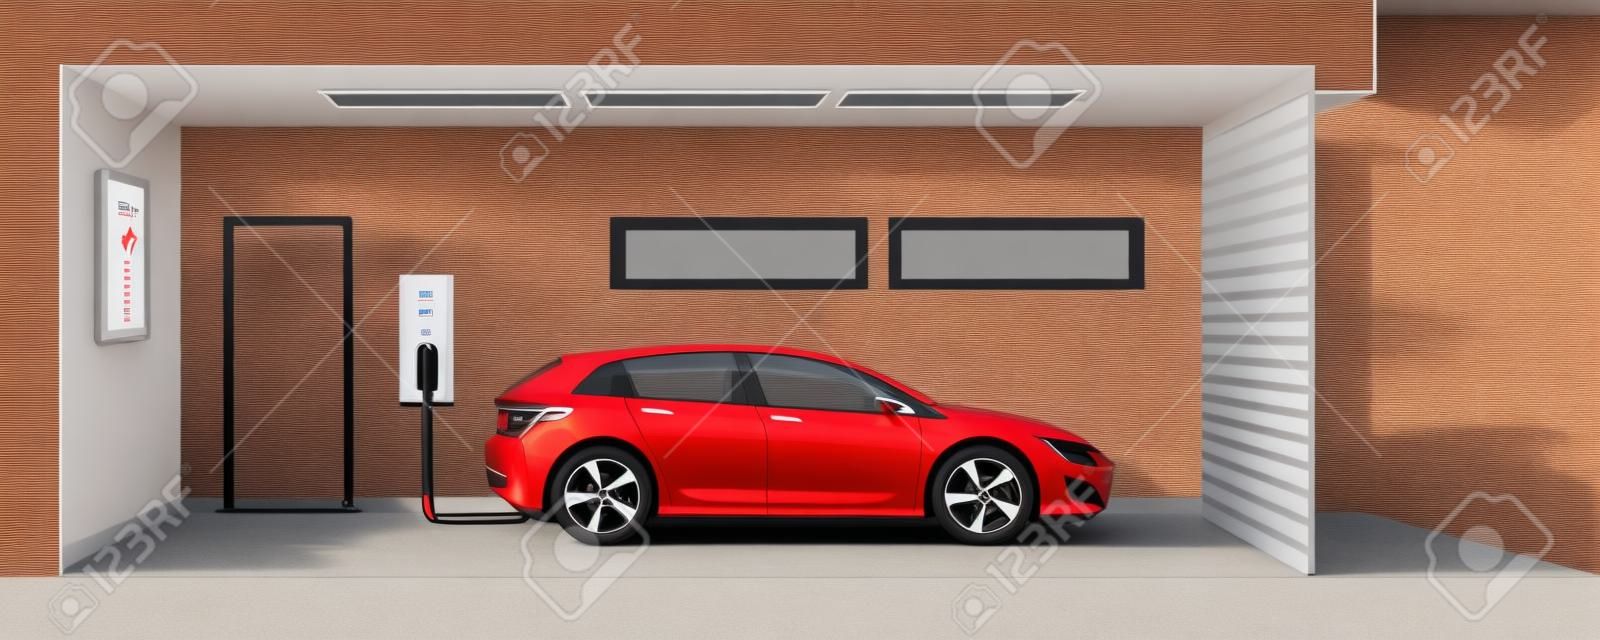 illustration plat d'une voiture électrique rouge de charge au point de station de chargement à l'intérieur de la maison garage. électromobilité intérieur concept d'e-motion intelligente intégrée.